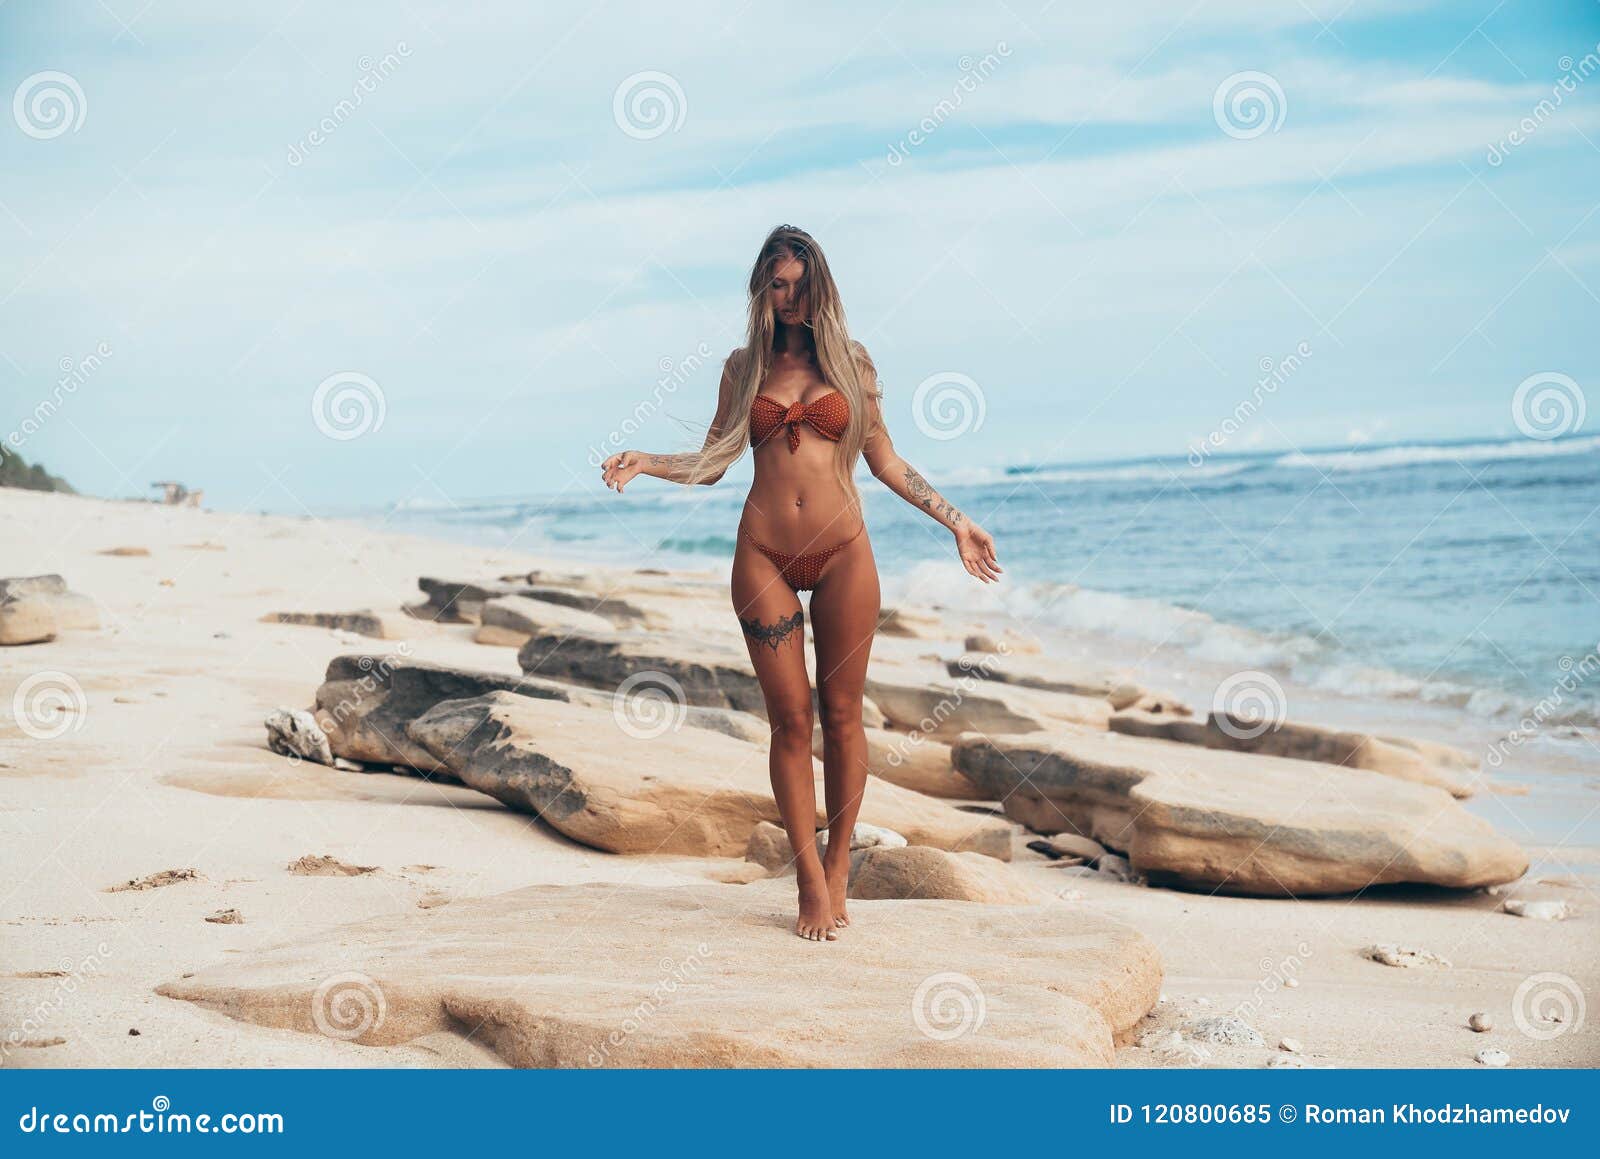 Naked Beach Girls